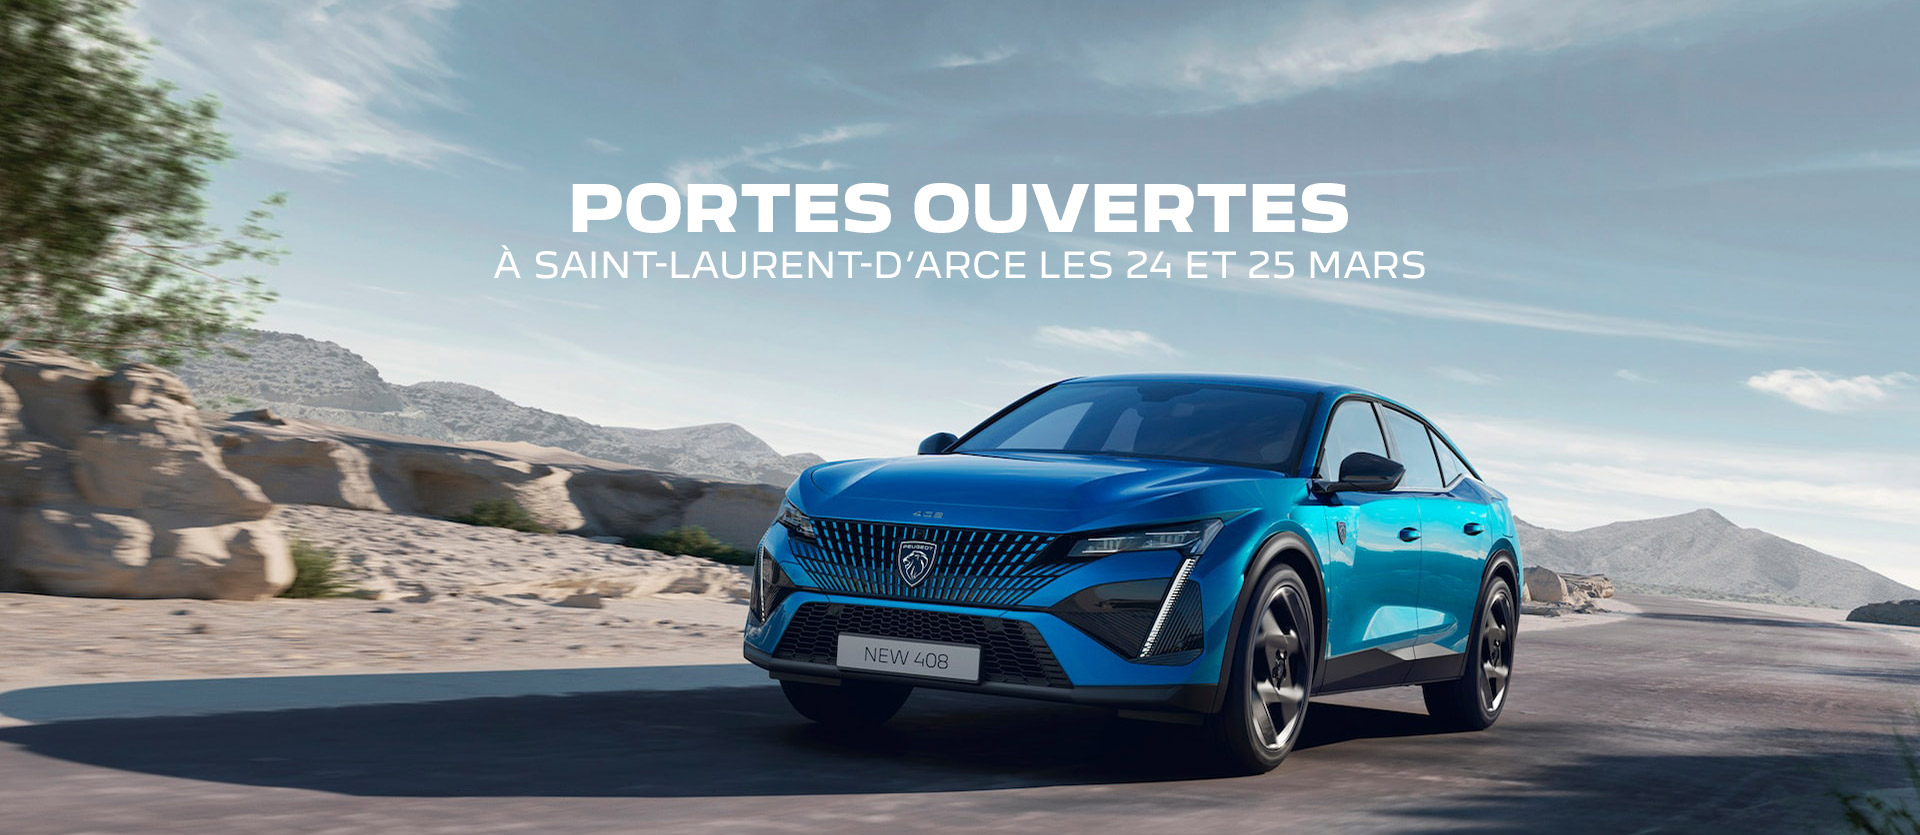 Portes ouvertes Peugeot à Saint-Laurent-d'Arce